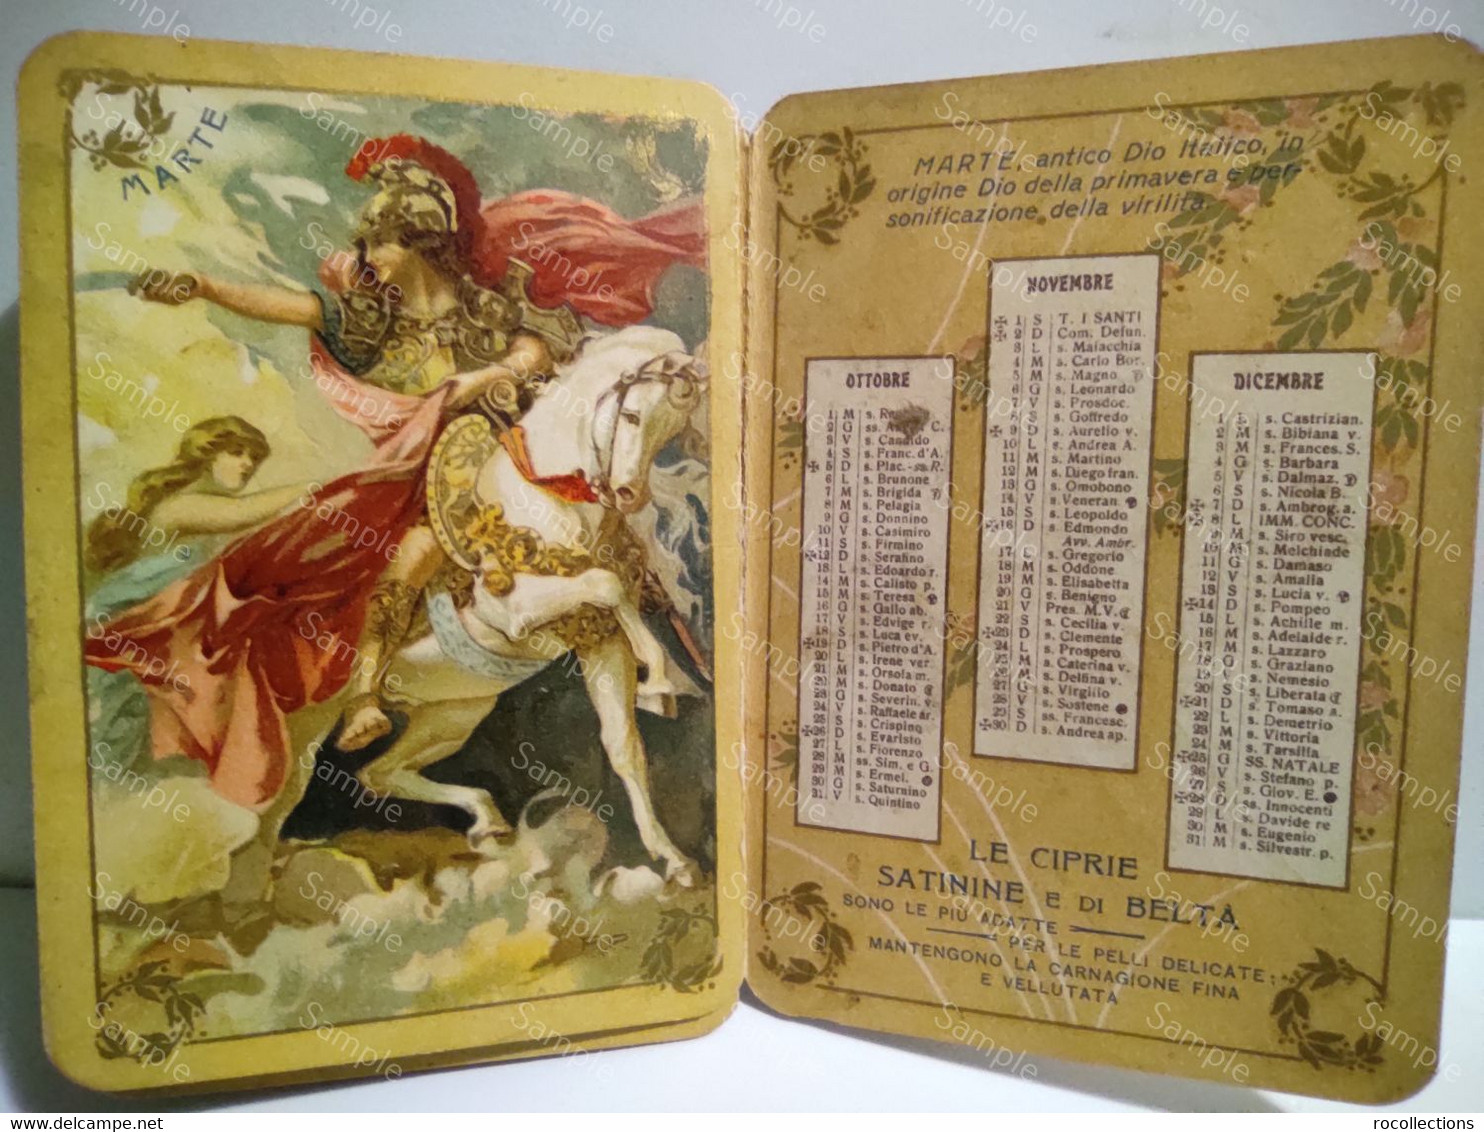 Italy Italia OLIMPIADE Calendario Mitologico PROFUMERIA SATININE Usellini & C. Milano 1913. Perfumery Calendar - Petit Format : 1901-20